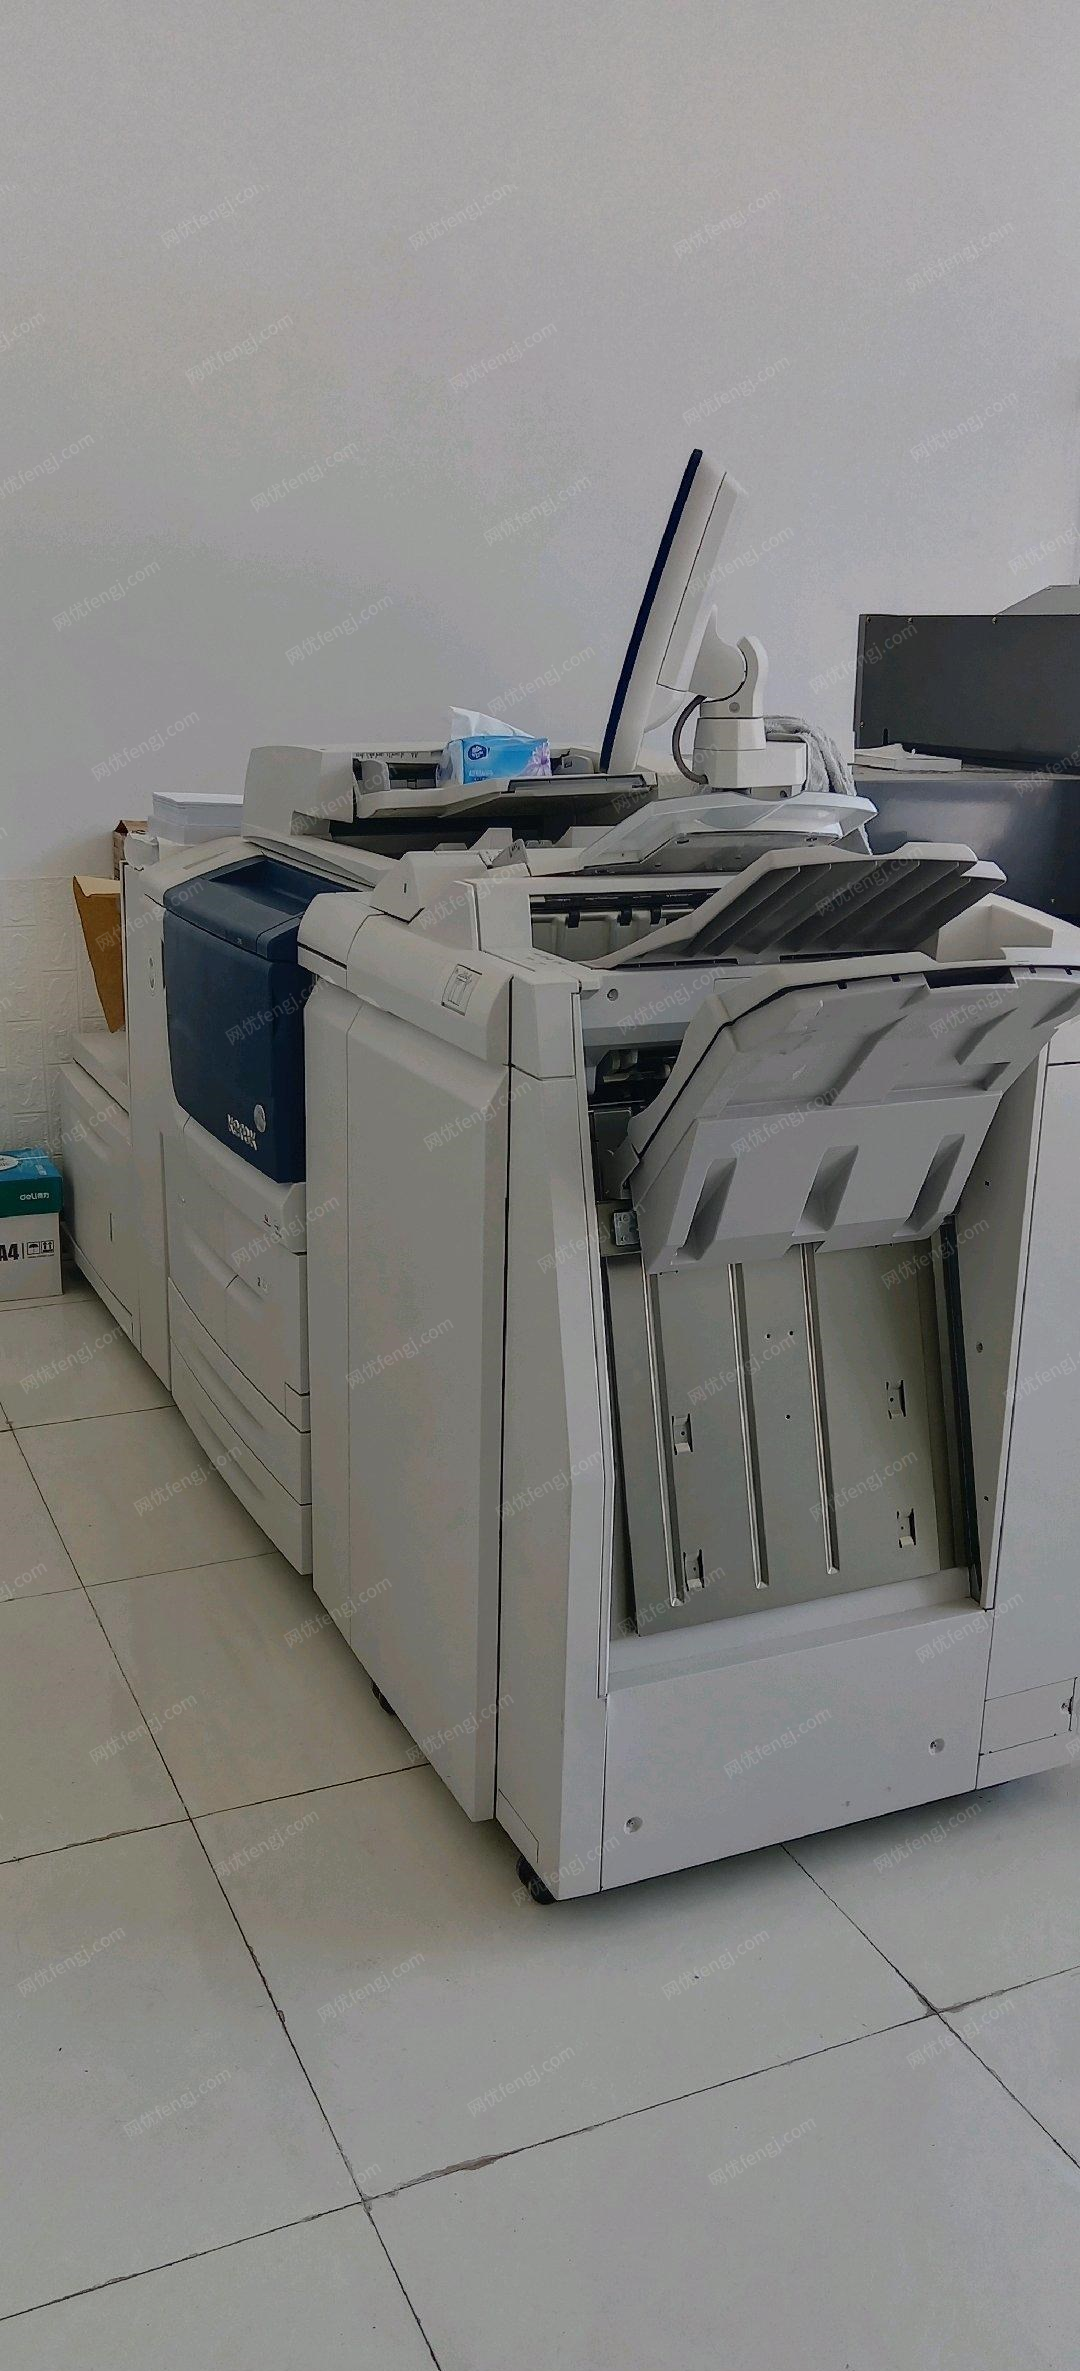 北京顺义区转让九成新施乐打印机